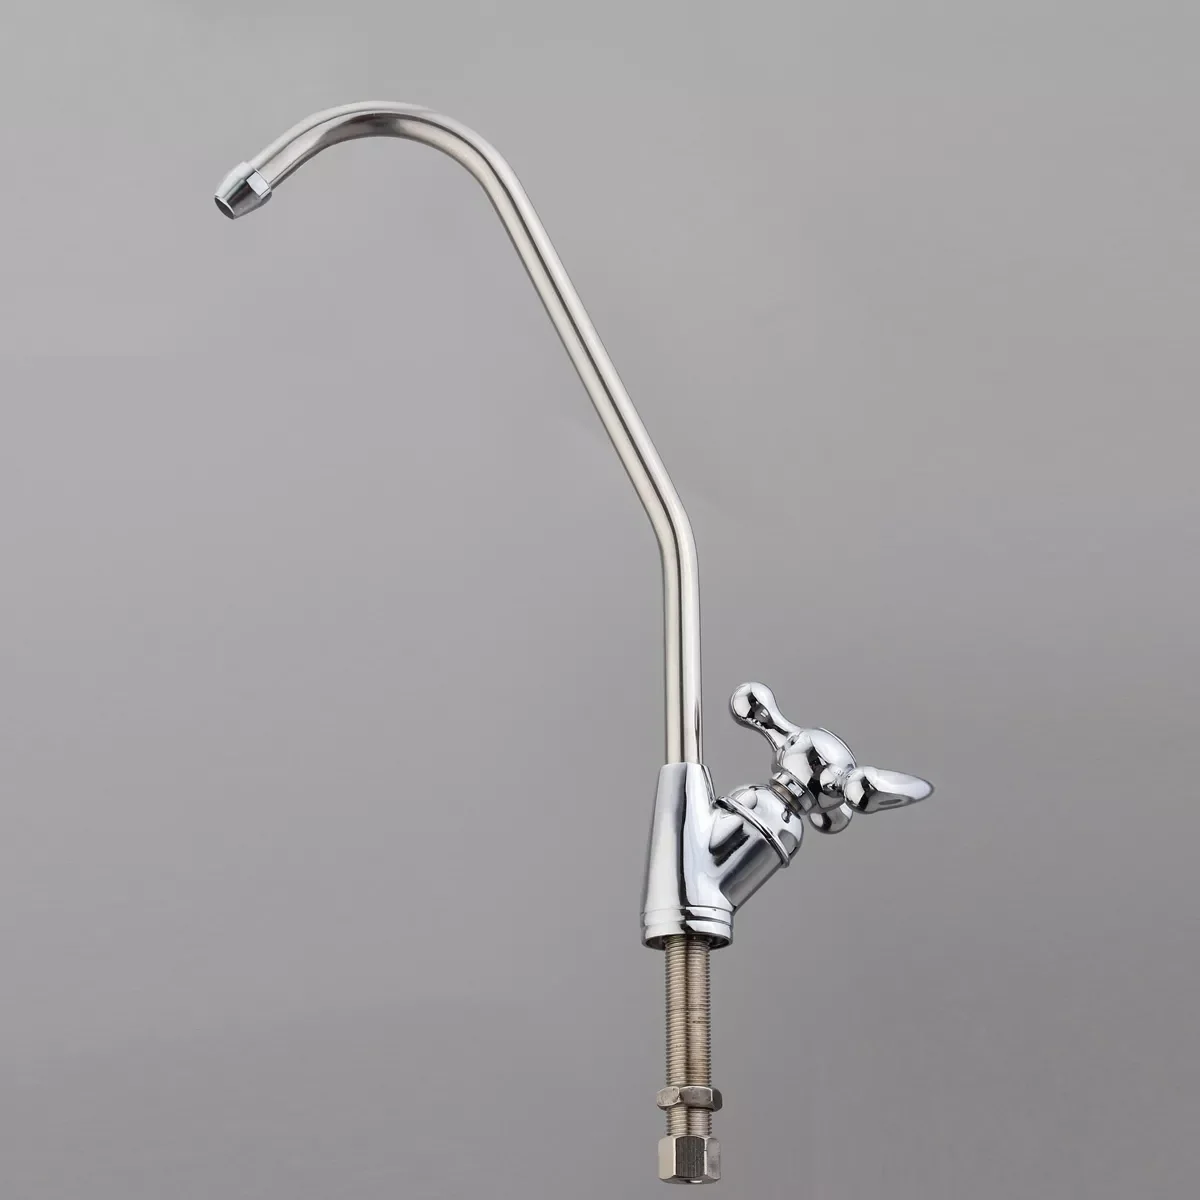 

Фильтр для питьевой воды AUGIENB, латунный хромированный смеситель с керамическим сердечником и гусиной шеей 1/4 дюйма, обратный осмос